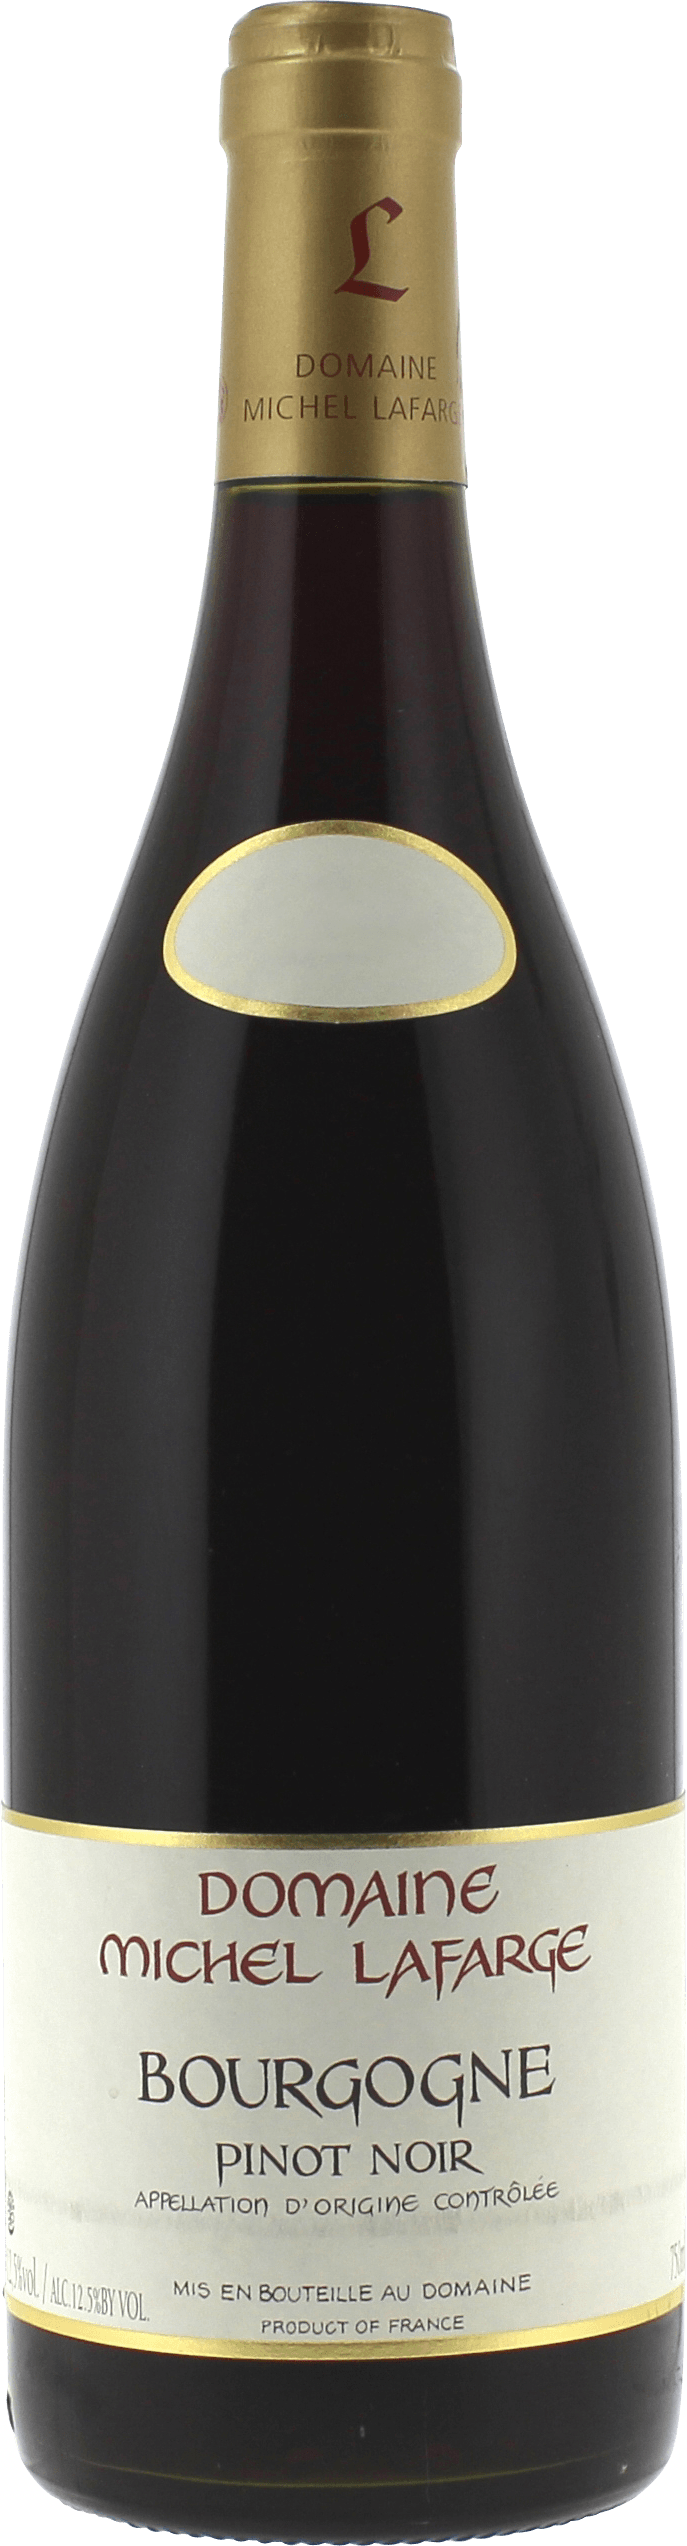 Bourgogne pinot noir 2019  LAFARGE, Bourgogne rouge